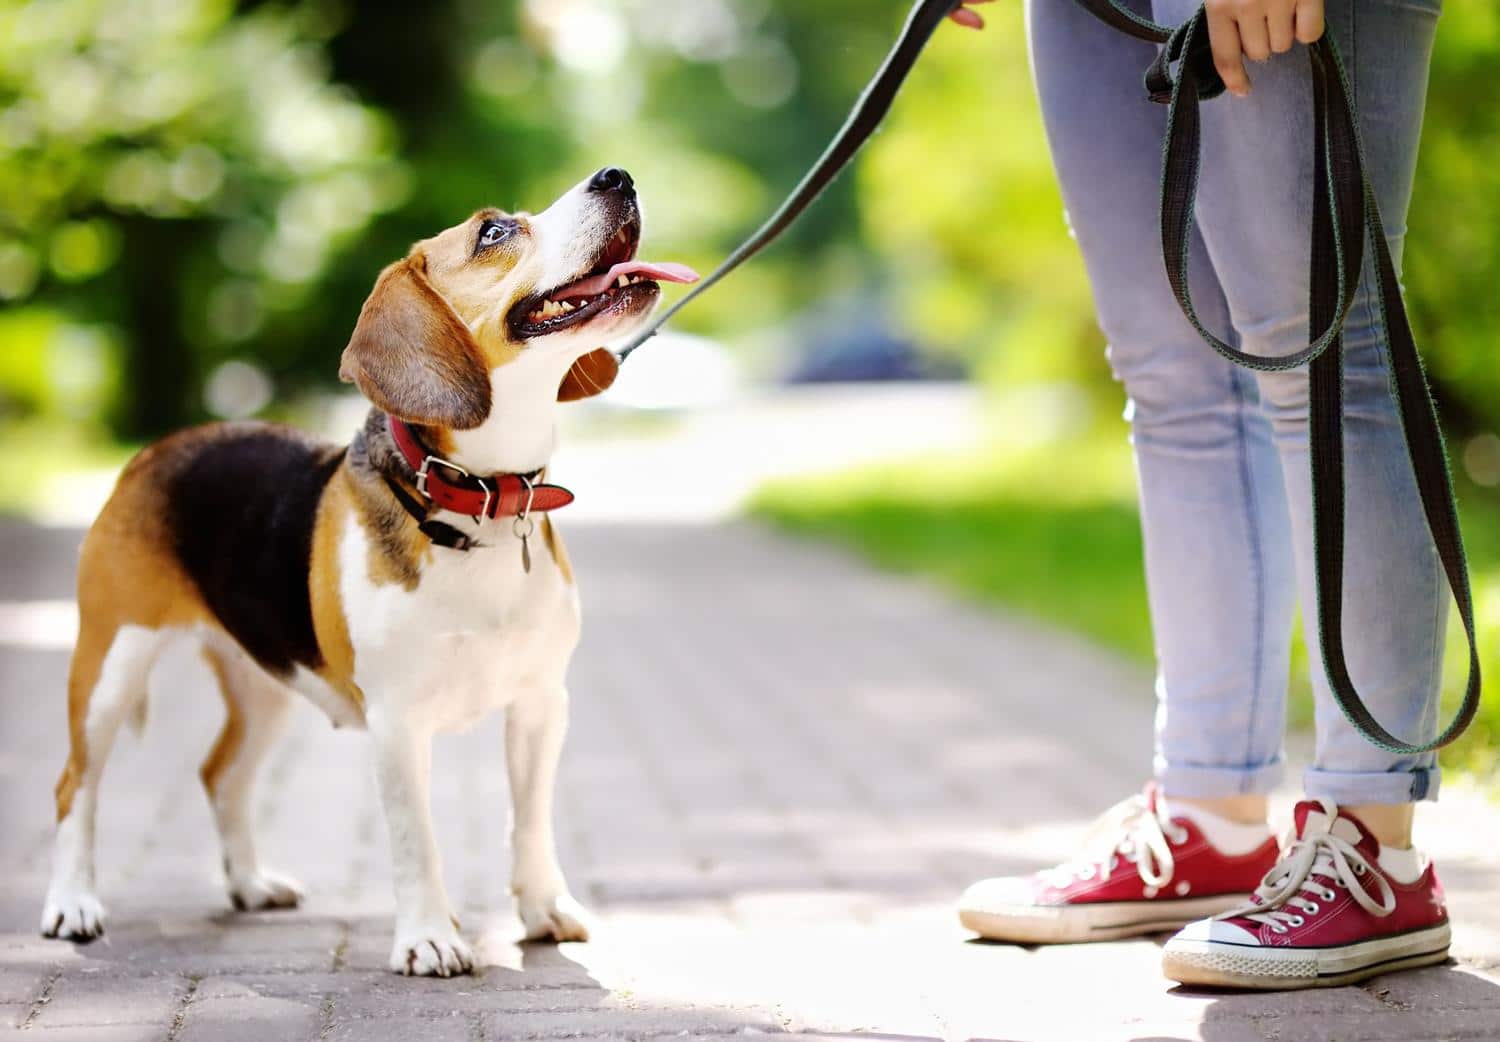 Beagle Erziehung - Worauf muss ich beim Beagle Training achten?